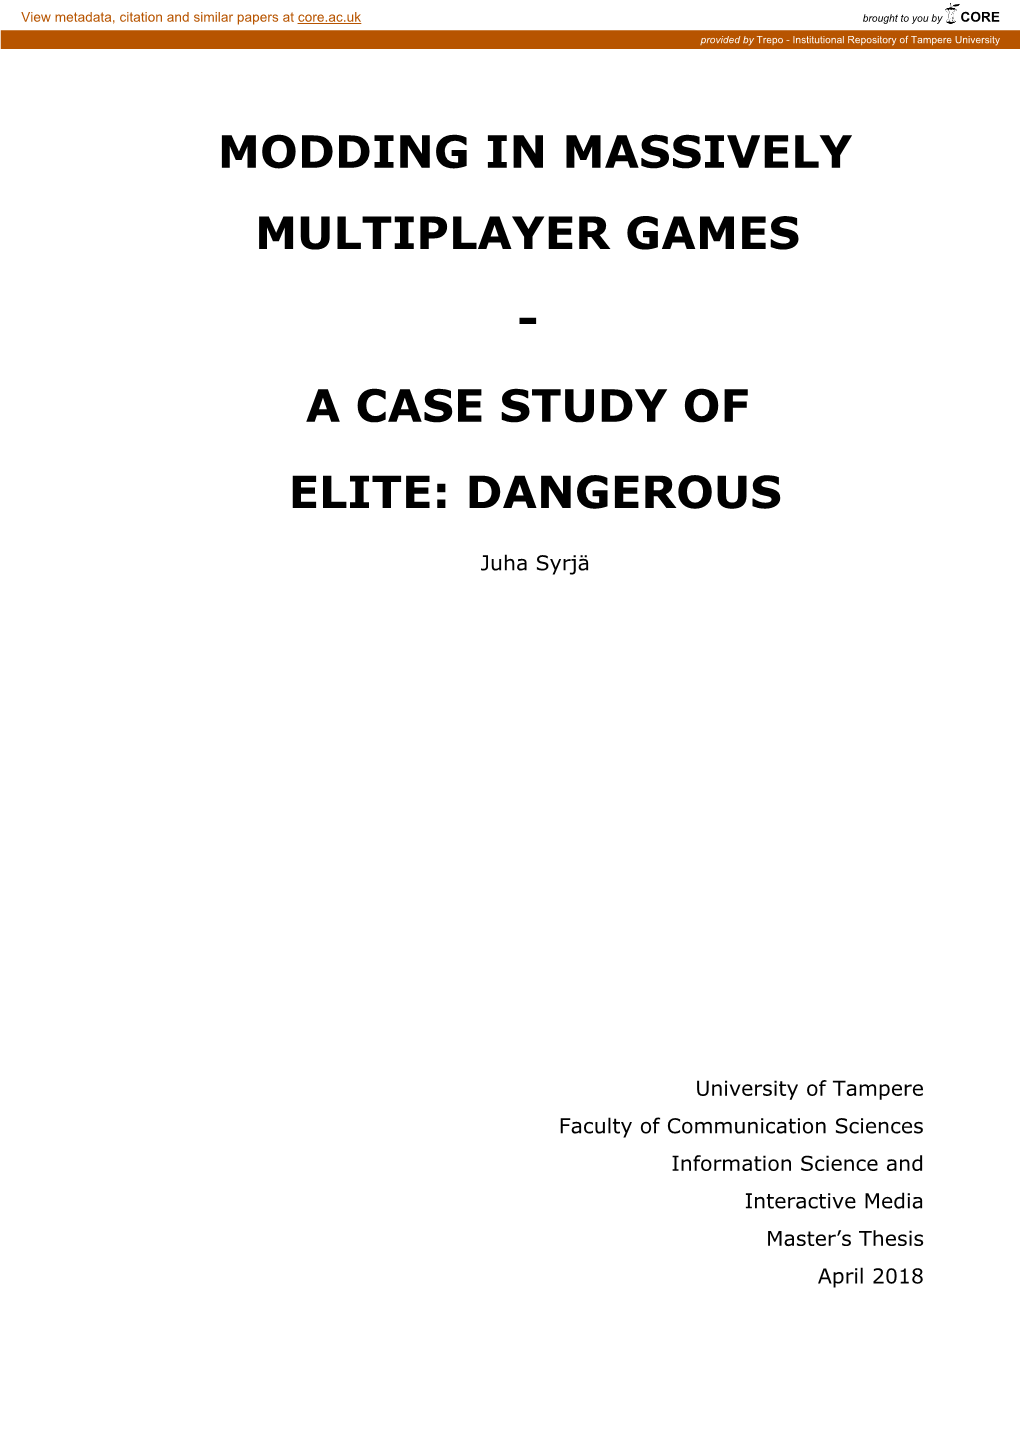 A Case Study of Elite: Dangerous